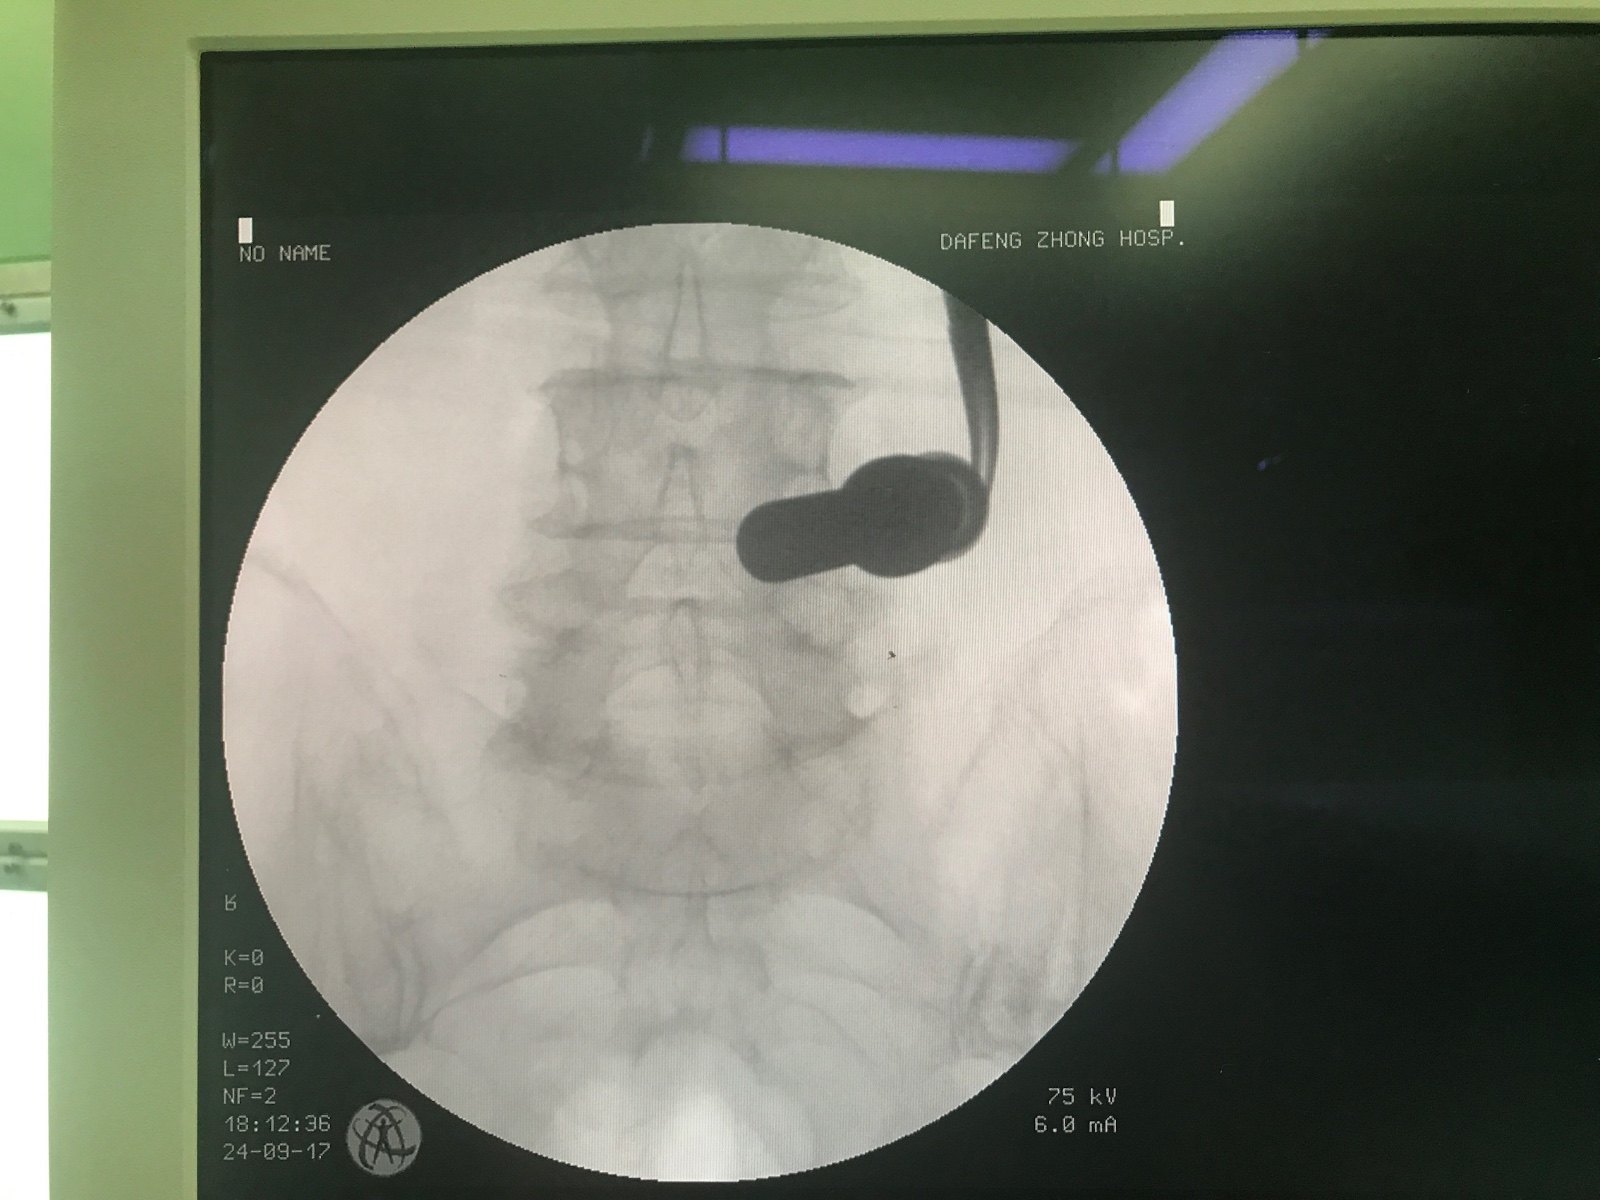 腰椎管狭窄的微创内镜手术:DELTA 大通道椎板